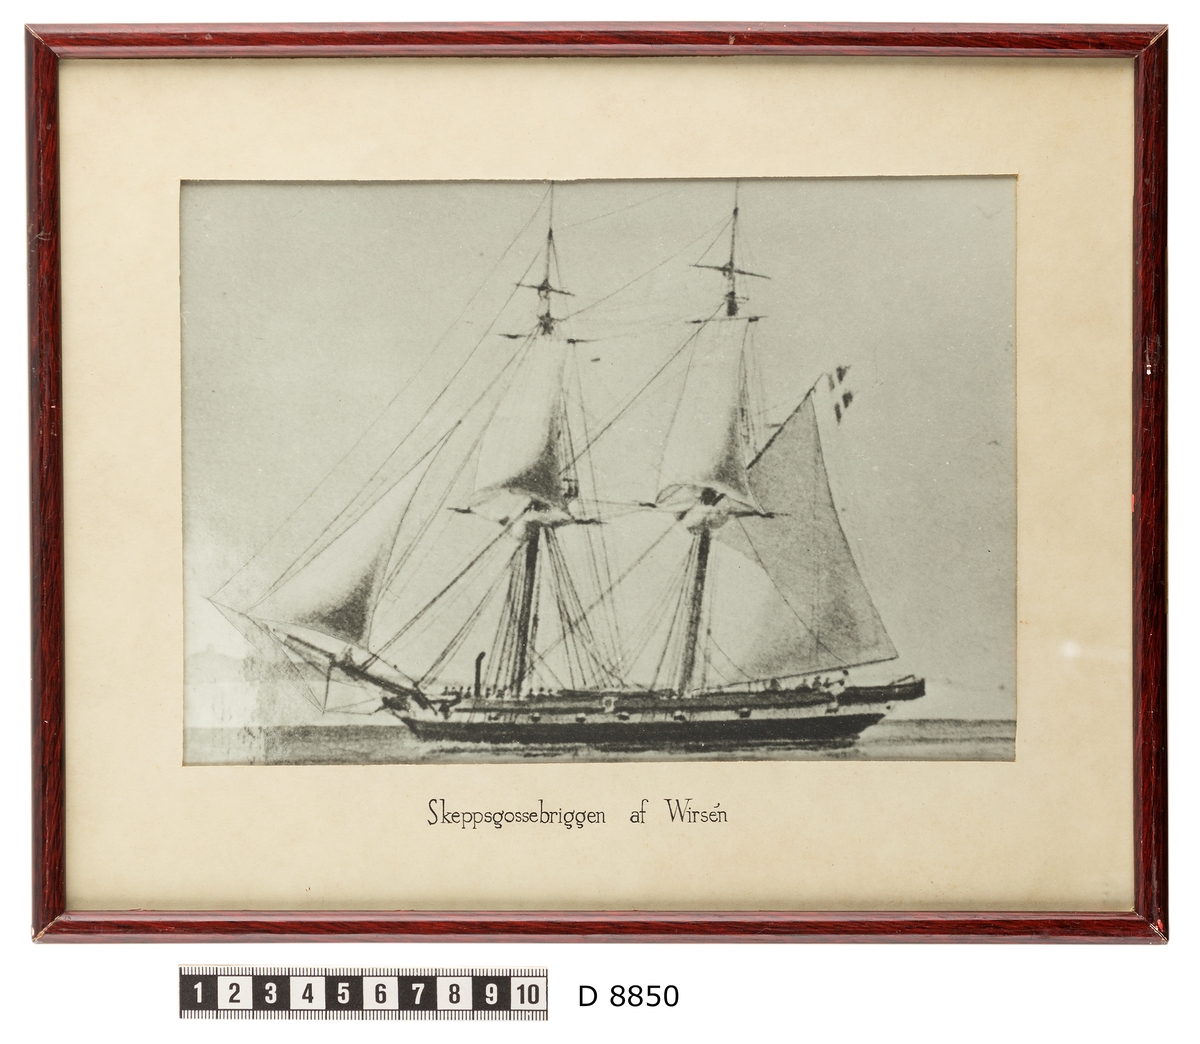 Denna reprofotografering efter en målning föreställer skeppsgossebriggen Af Wirsén till havs.